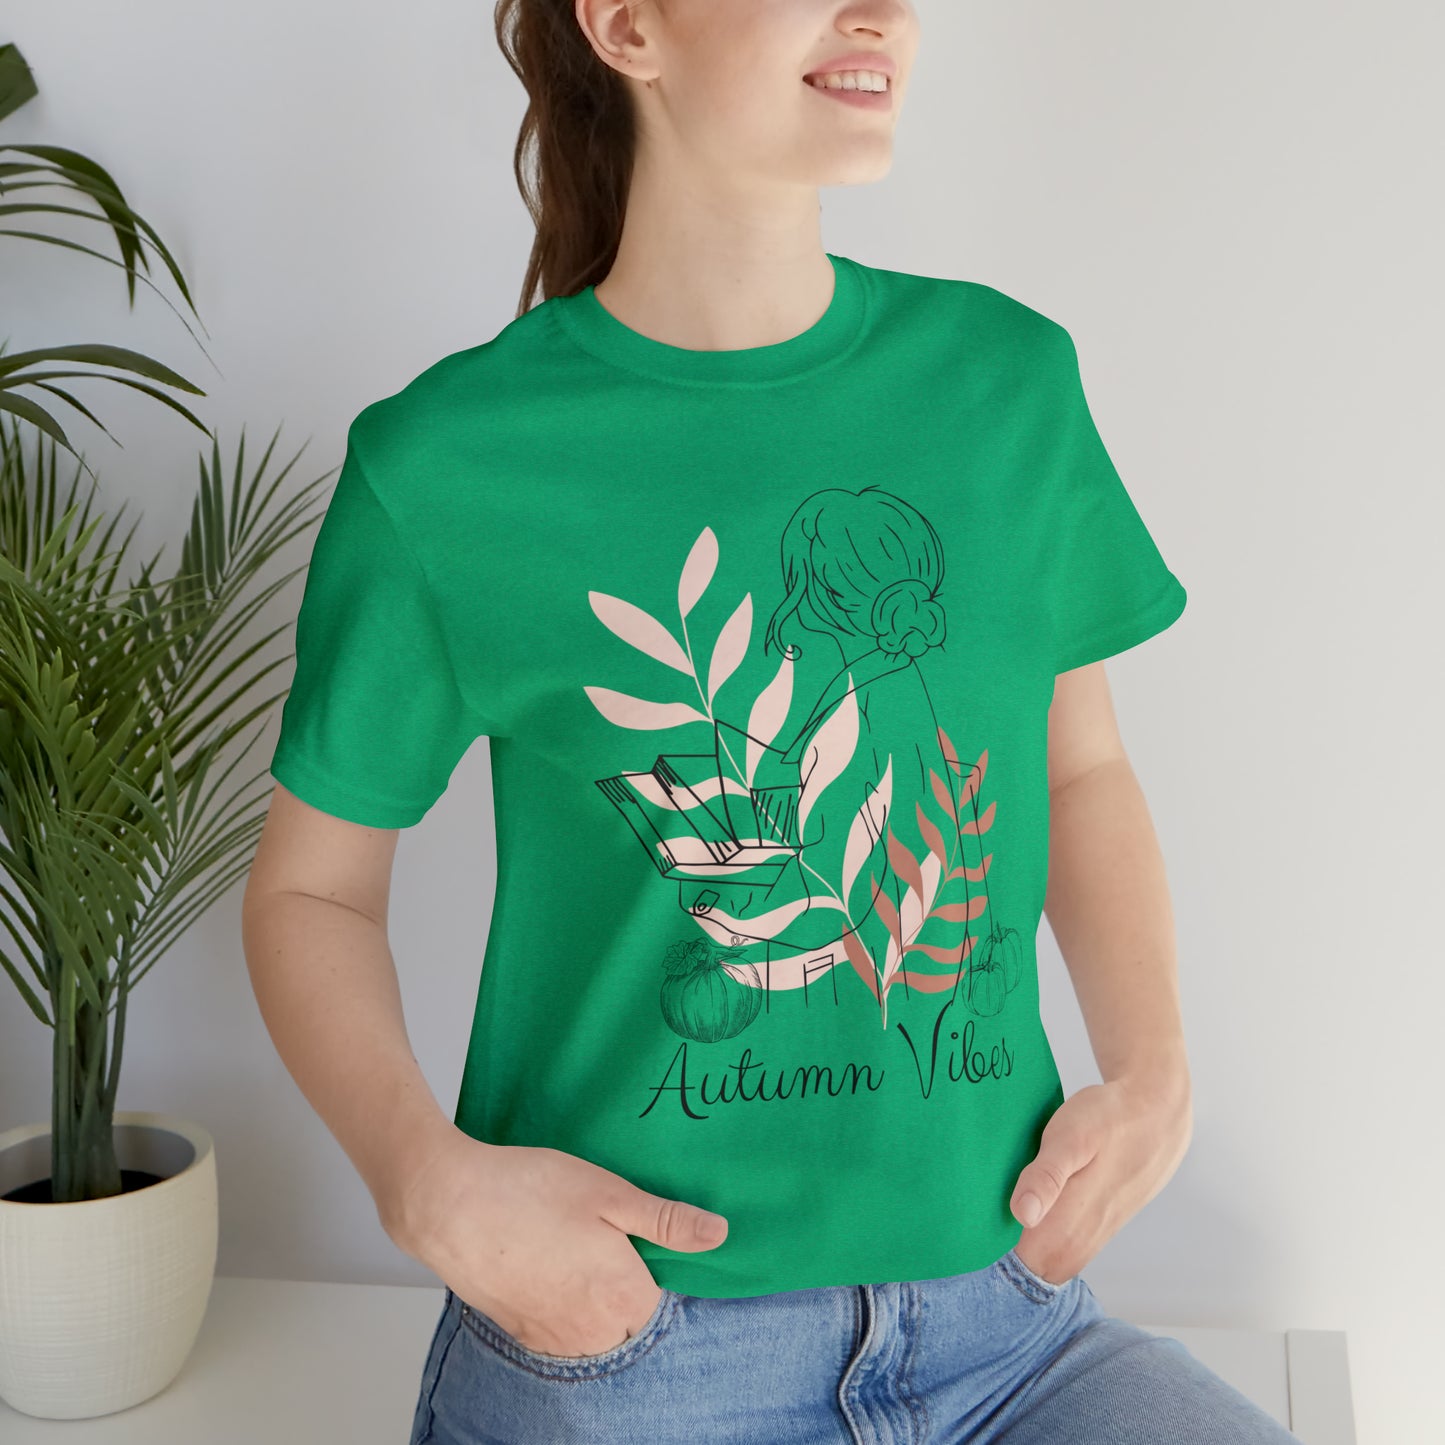 Autumn Vibes T-Shirt, Bookish Shirt, Fall Shirt, Lady with Pumpkin Shirt, Halloween T-Shirt, Autumnal T-Shirt, Autumnal Vibes Shirt